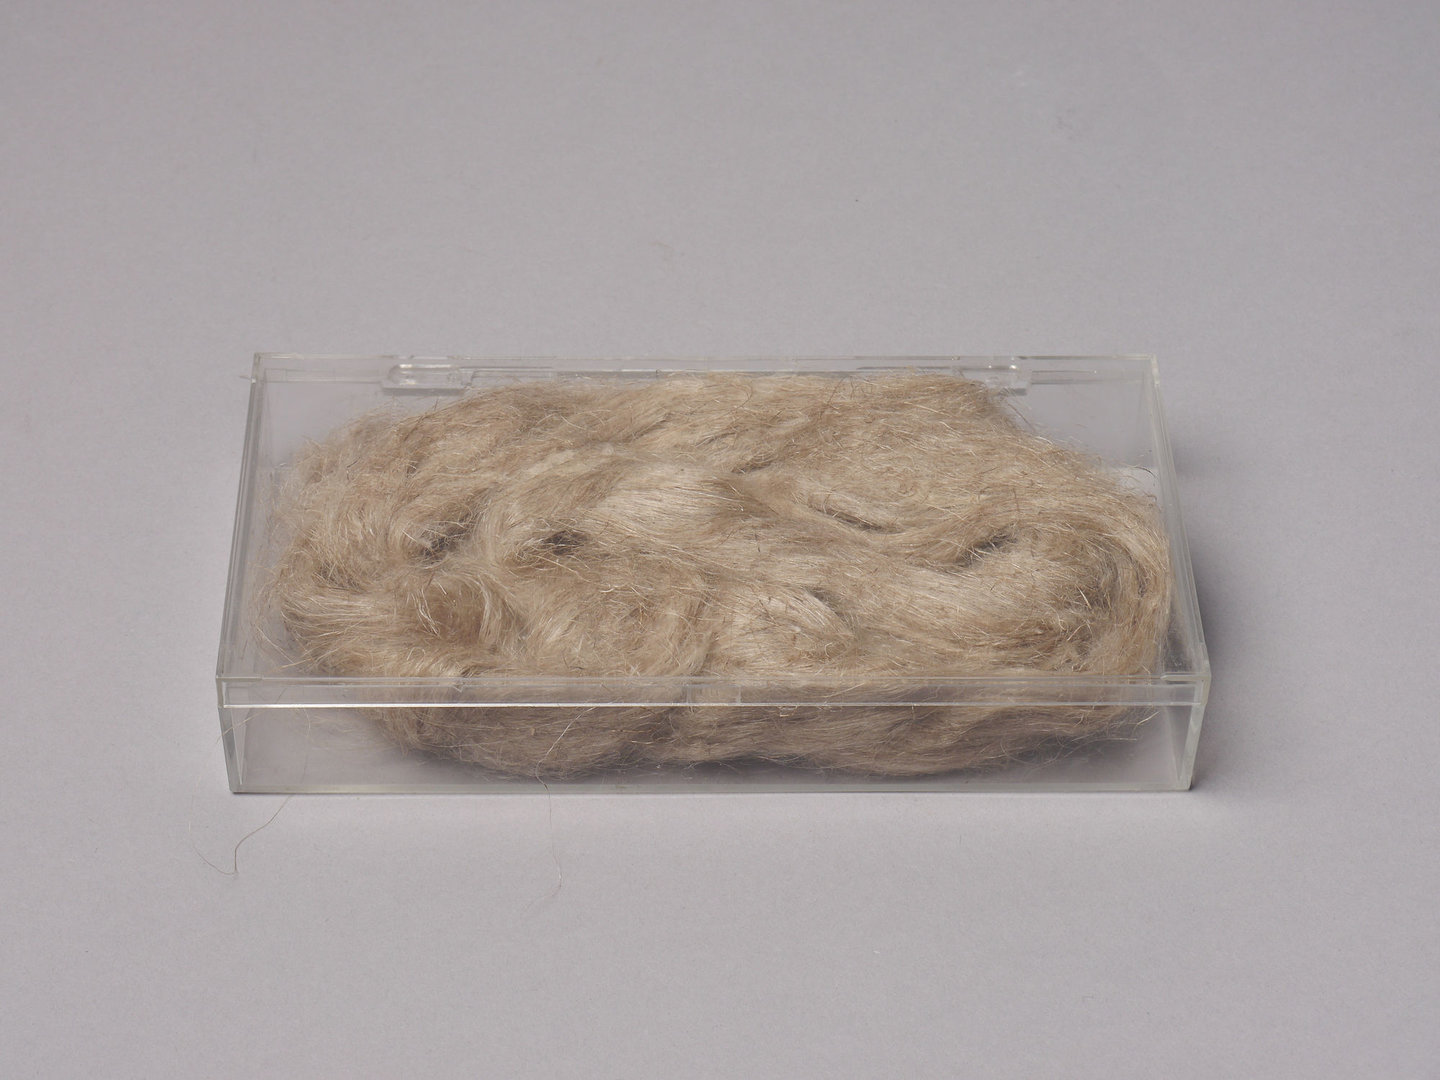 Staal van hekelklodden van vlas (dauwroot)